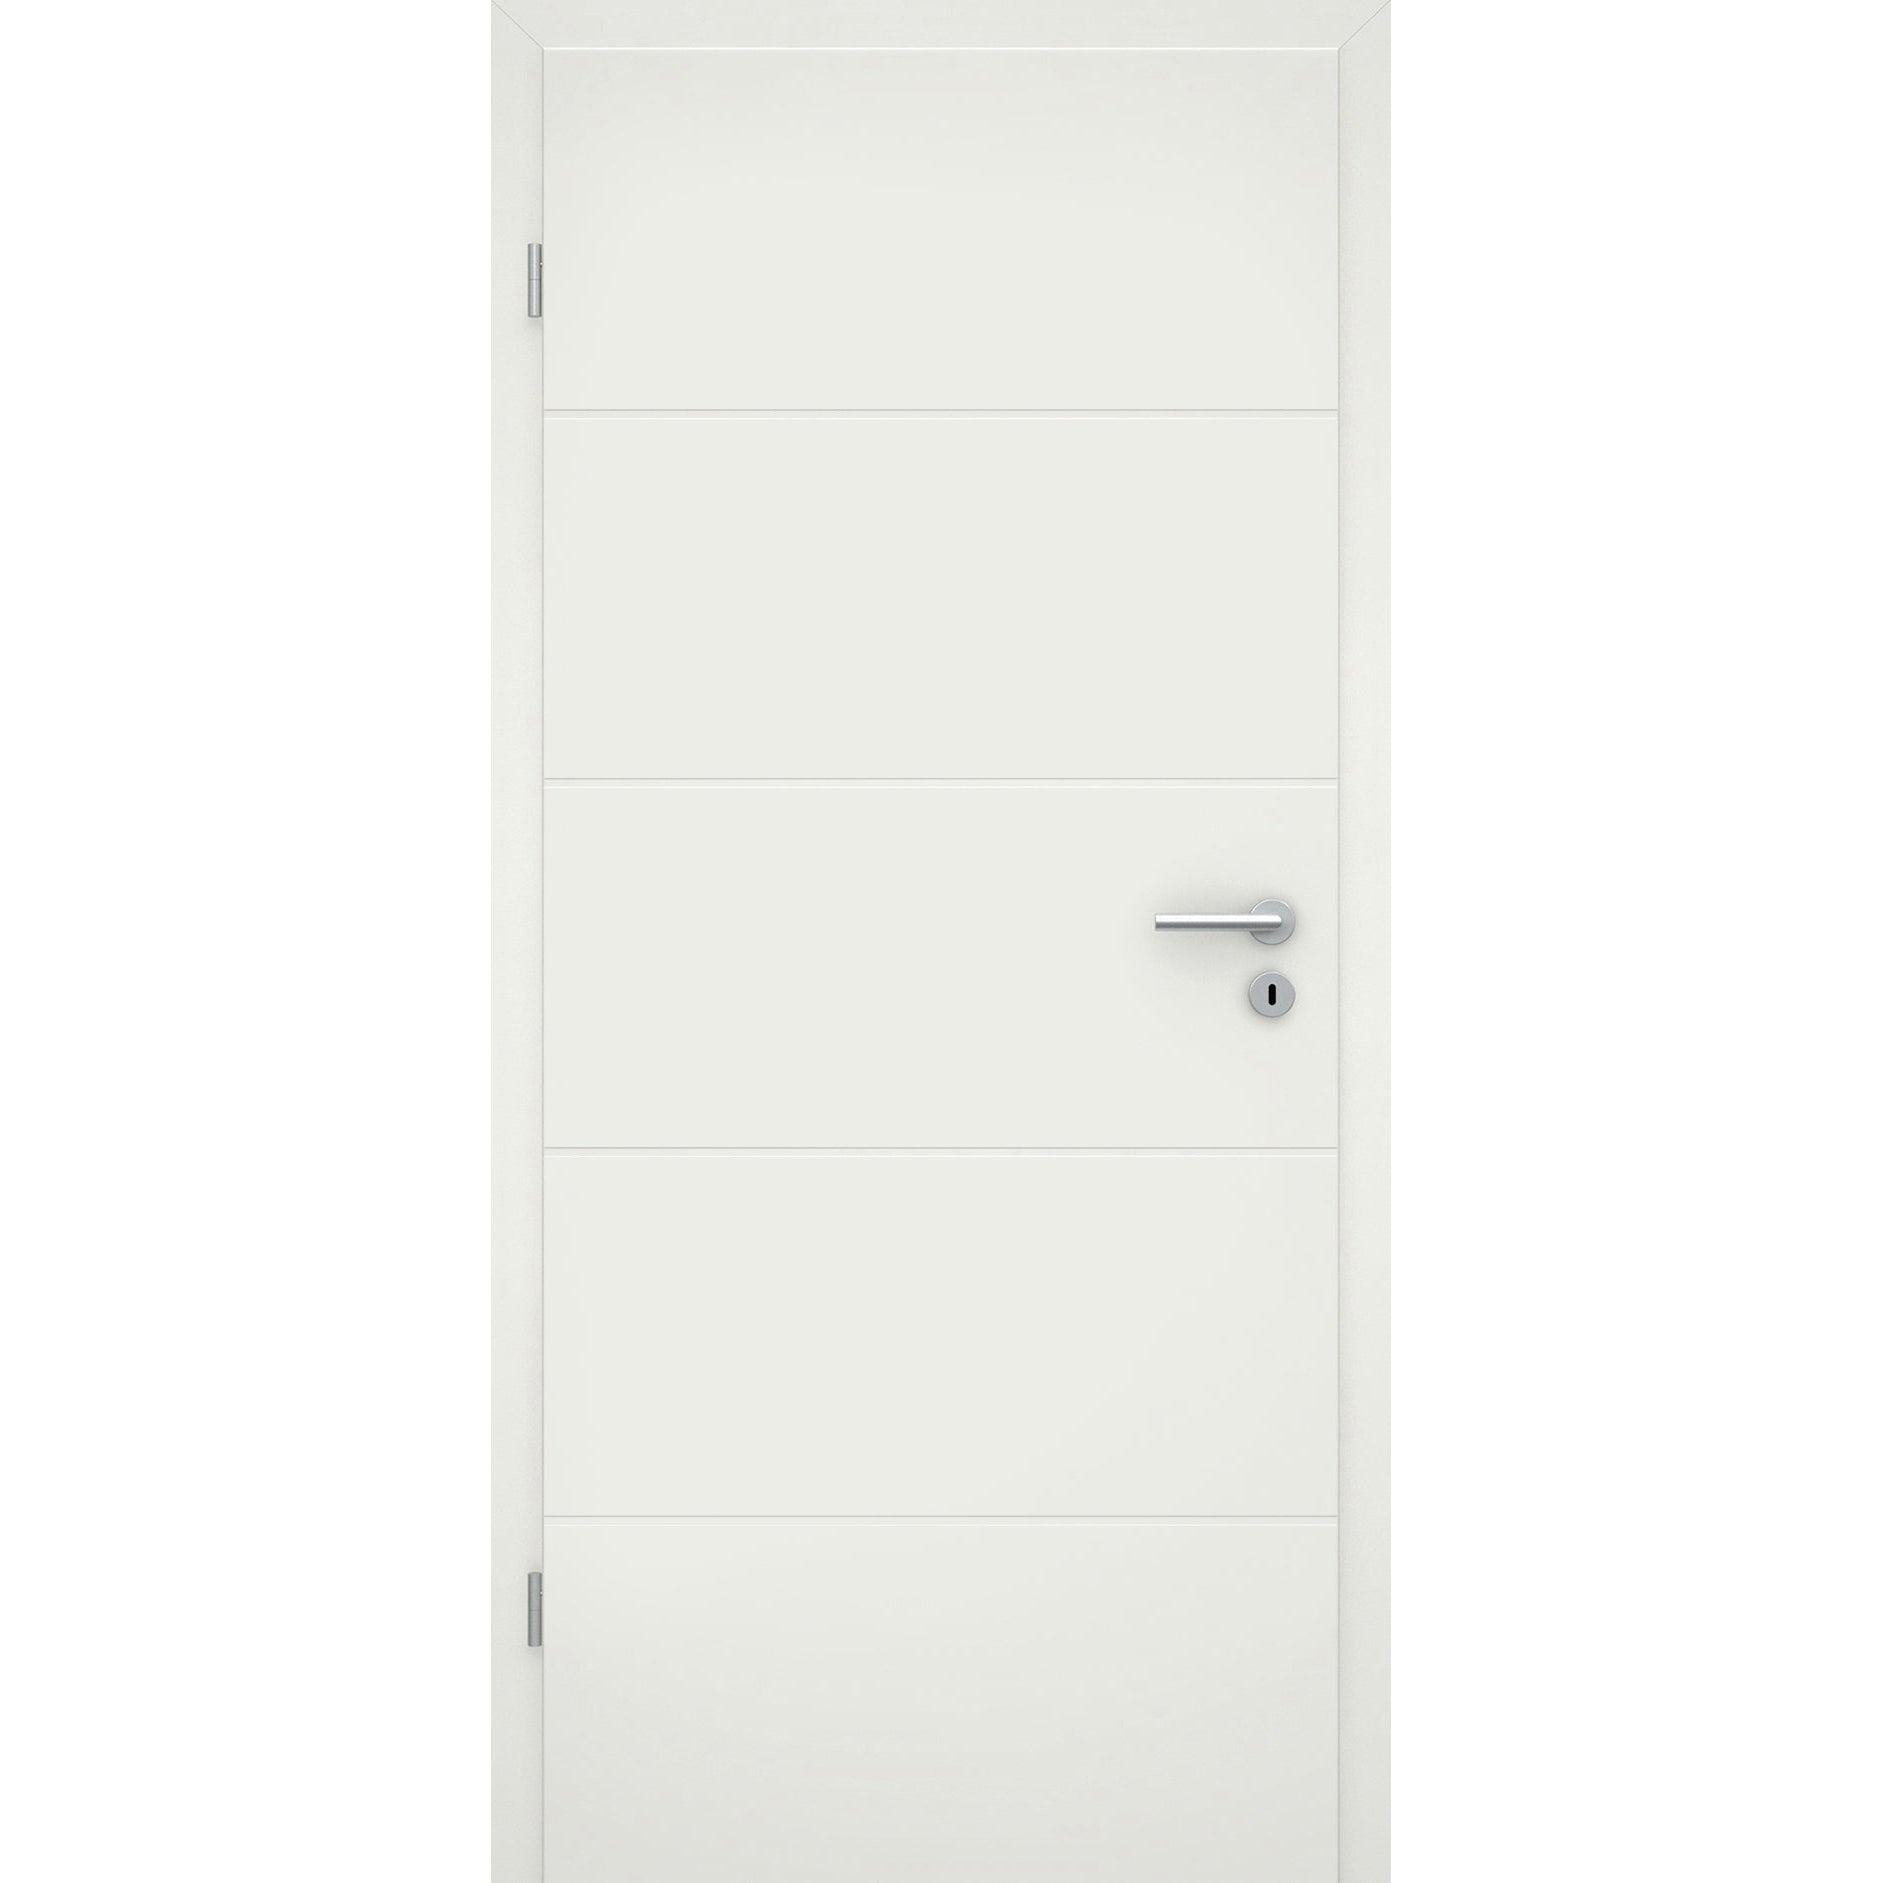 Zimmertür soft-weiß mit 4 Rillen Eckkante - Modell Designtür Q41